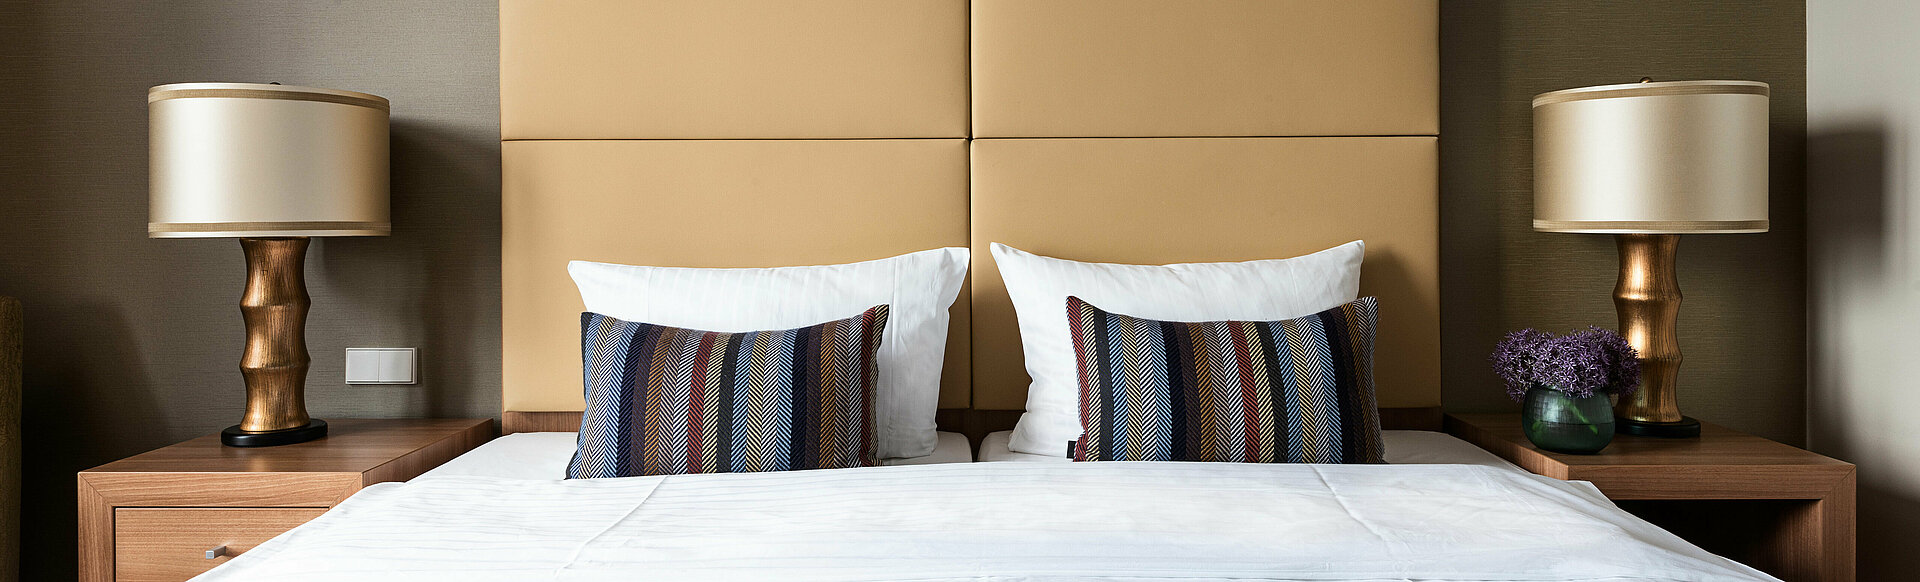 AMERON Köln Hotel Regent Premium Zimmer mit Bett Frontalansicht